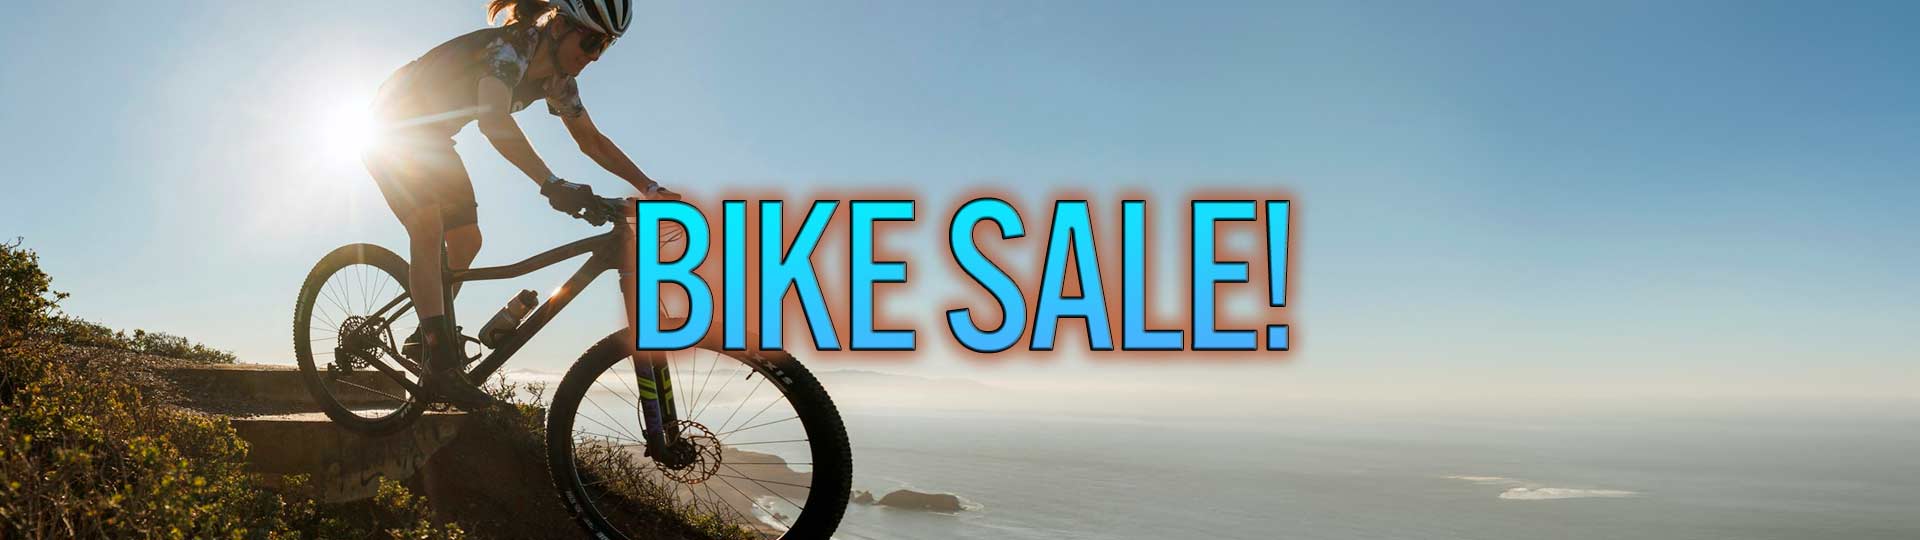 BIKE SALE!– Sunshine Bicycle Center